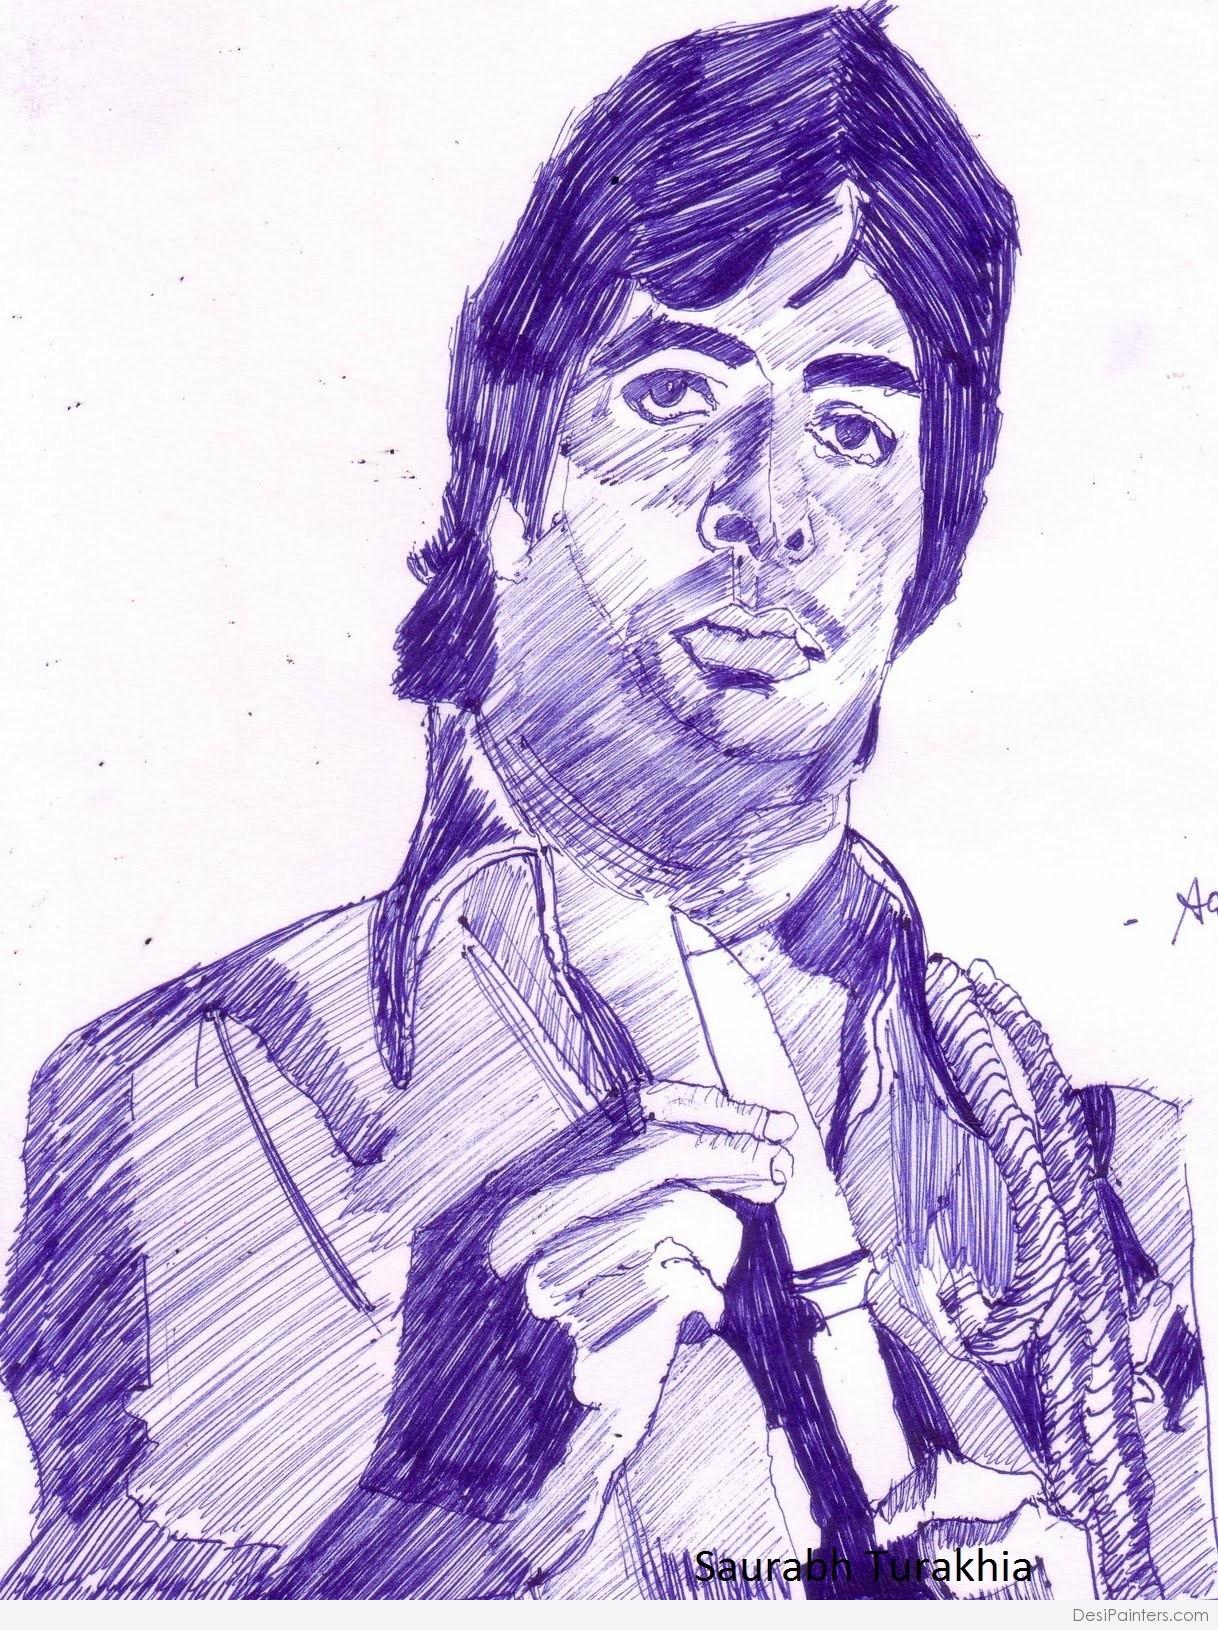 abeer malik - Amitabh Bachchan Portrait